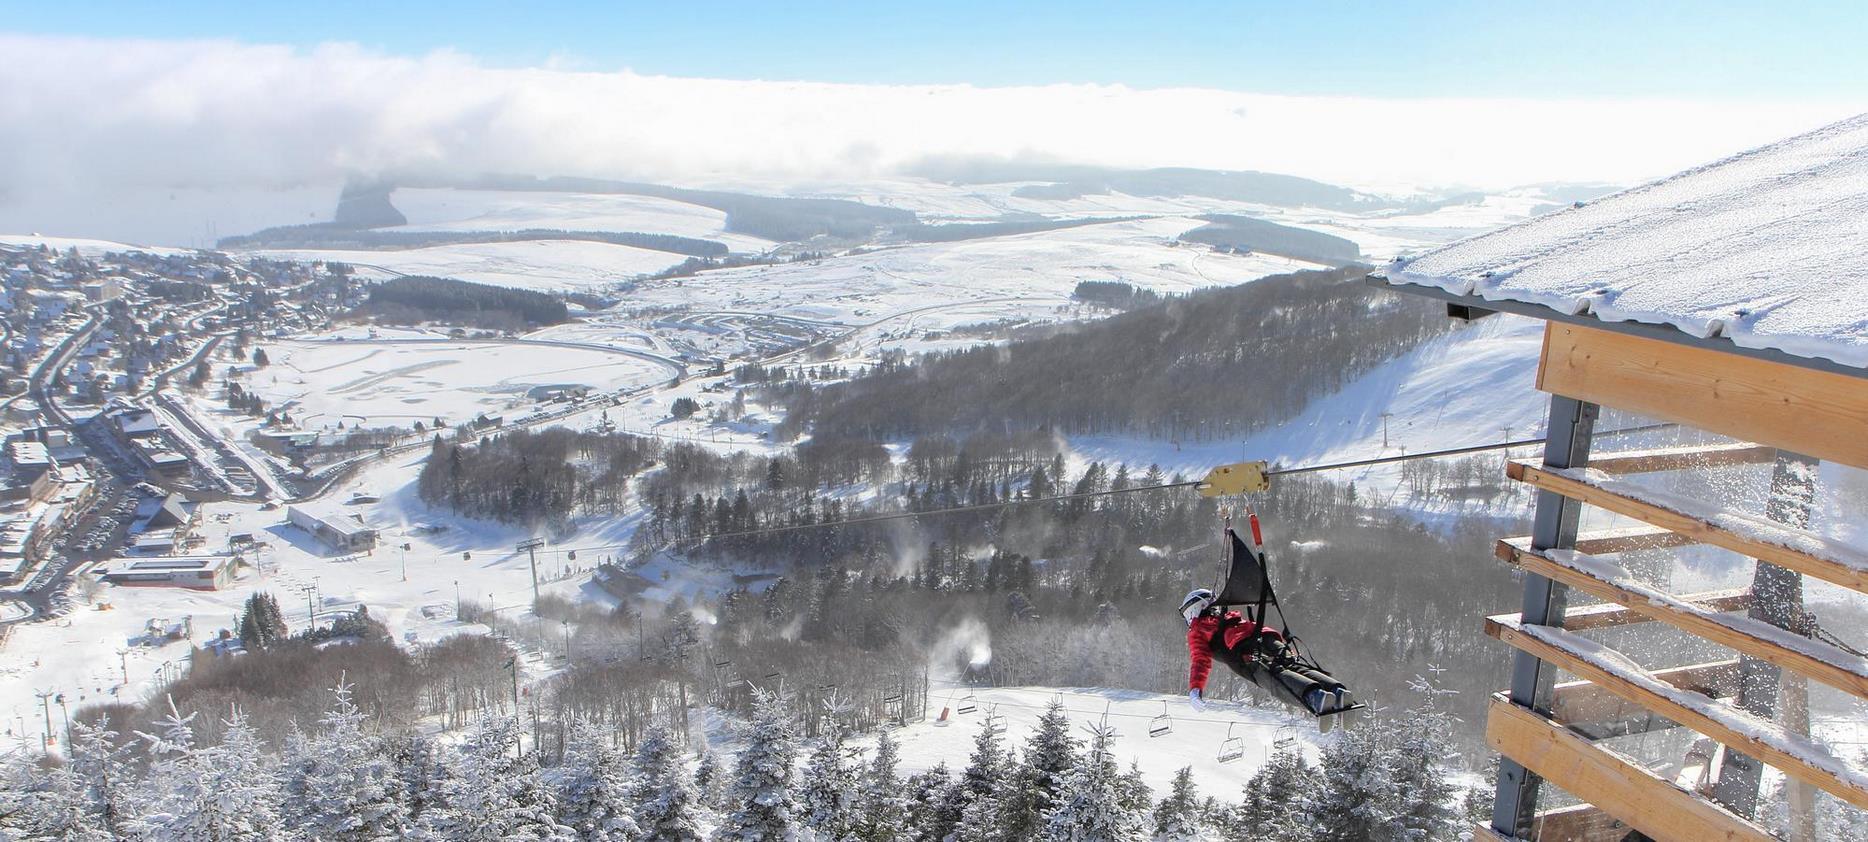 Super Besse - descente en tyrolienne durant la saison de ski